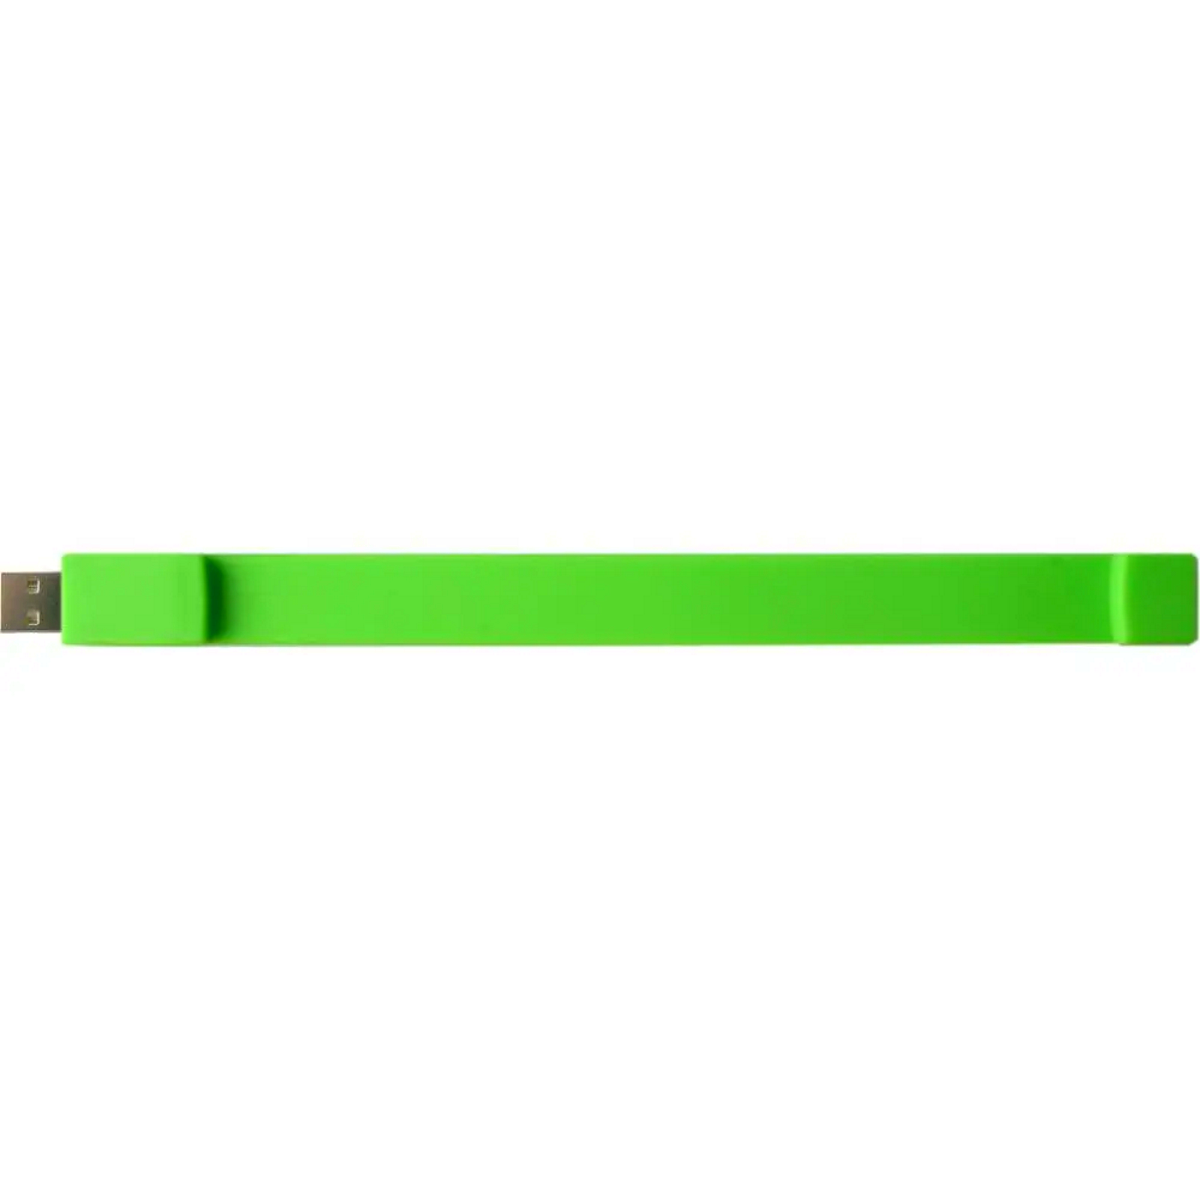 USB GERMANY (Grün, USB-Stick Silicon-Armband 8 GB)